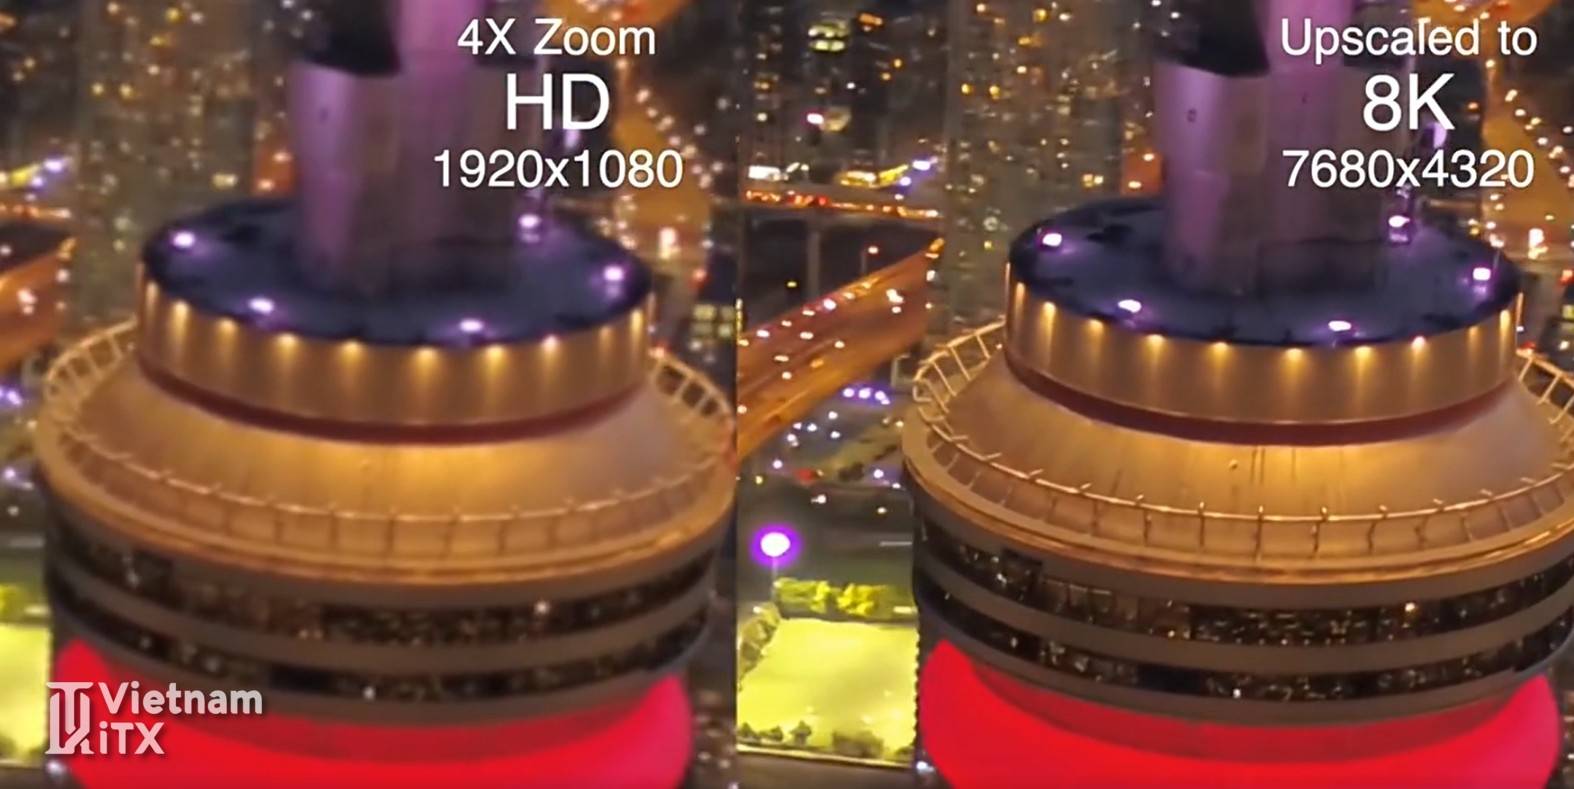 Topaz Video Enhance AI 2.1.1 - Tăng chất lượng độ phân giải video lên đến 8K.jpg